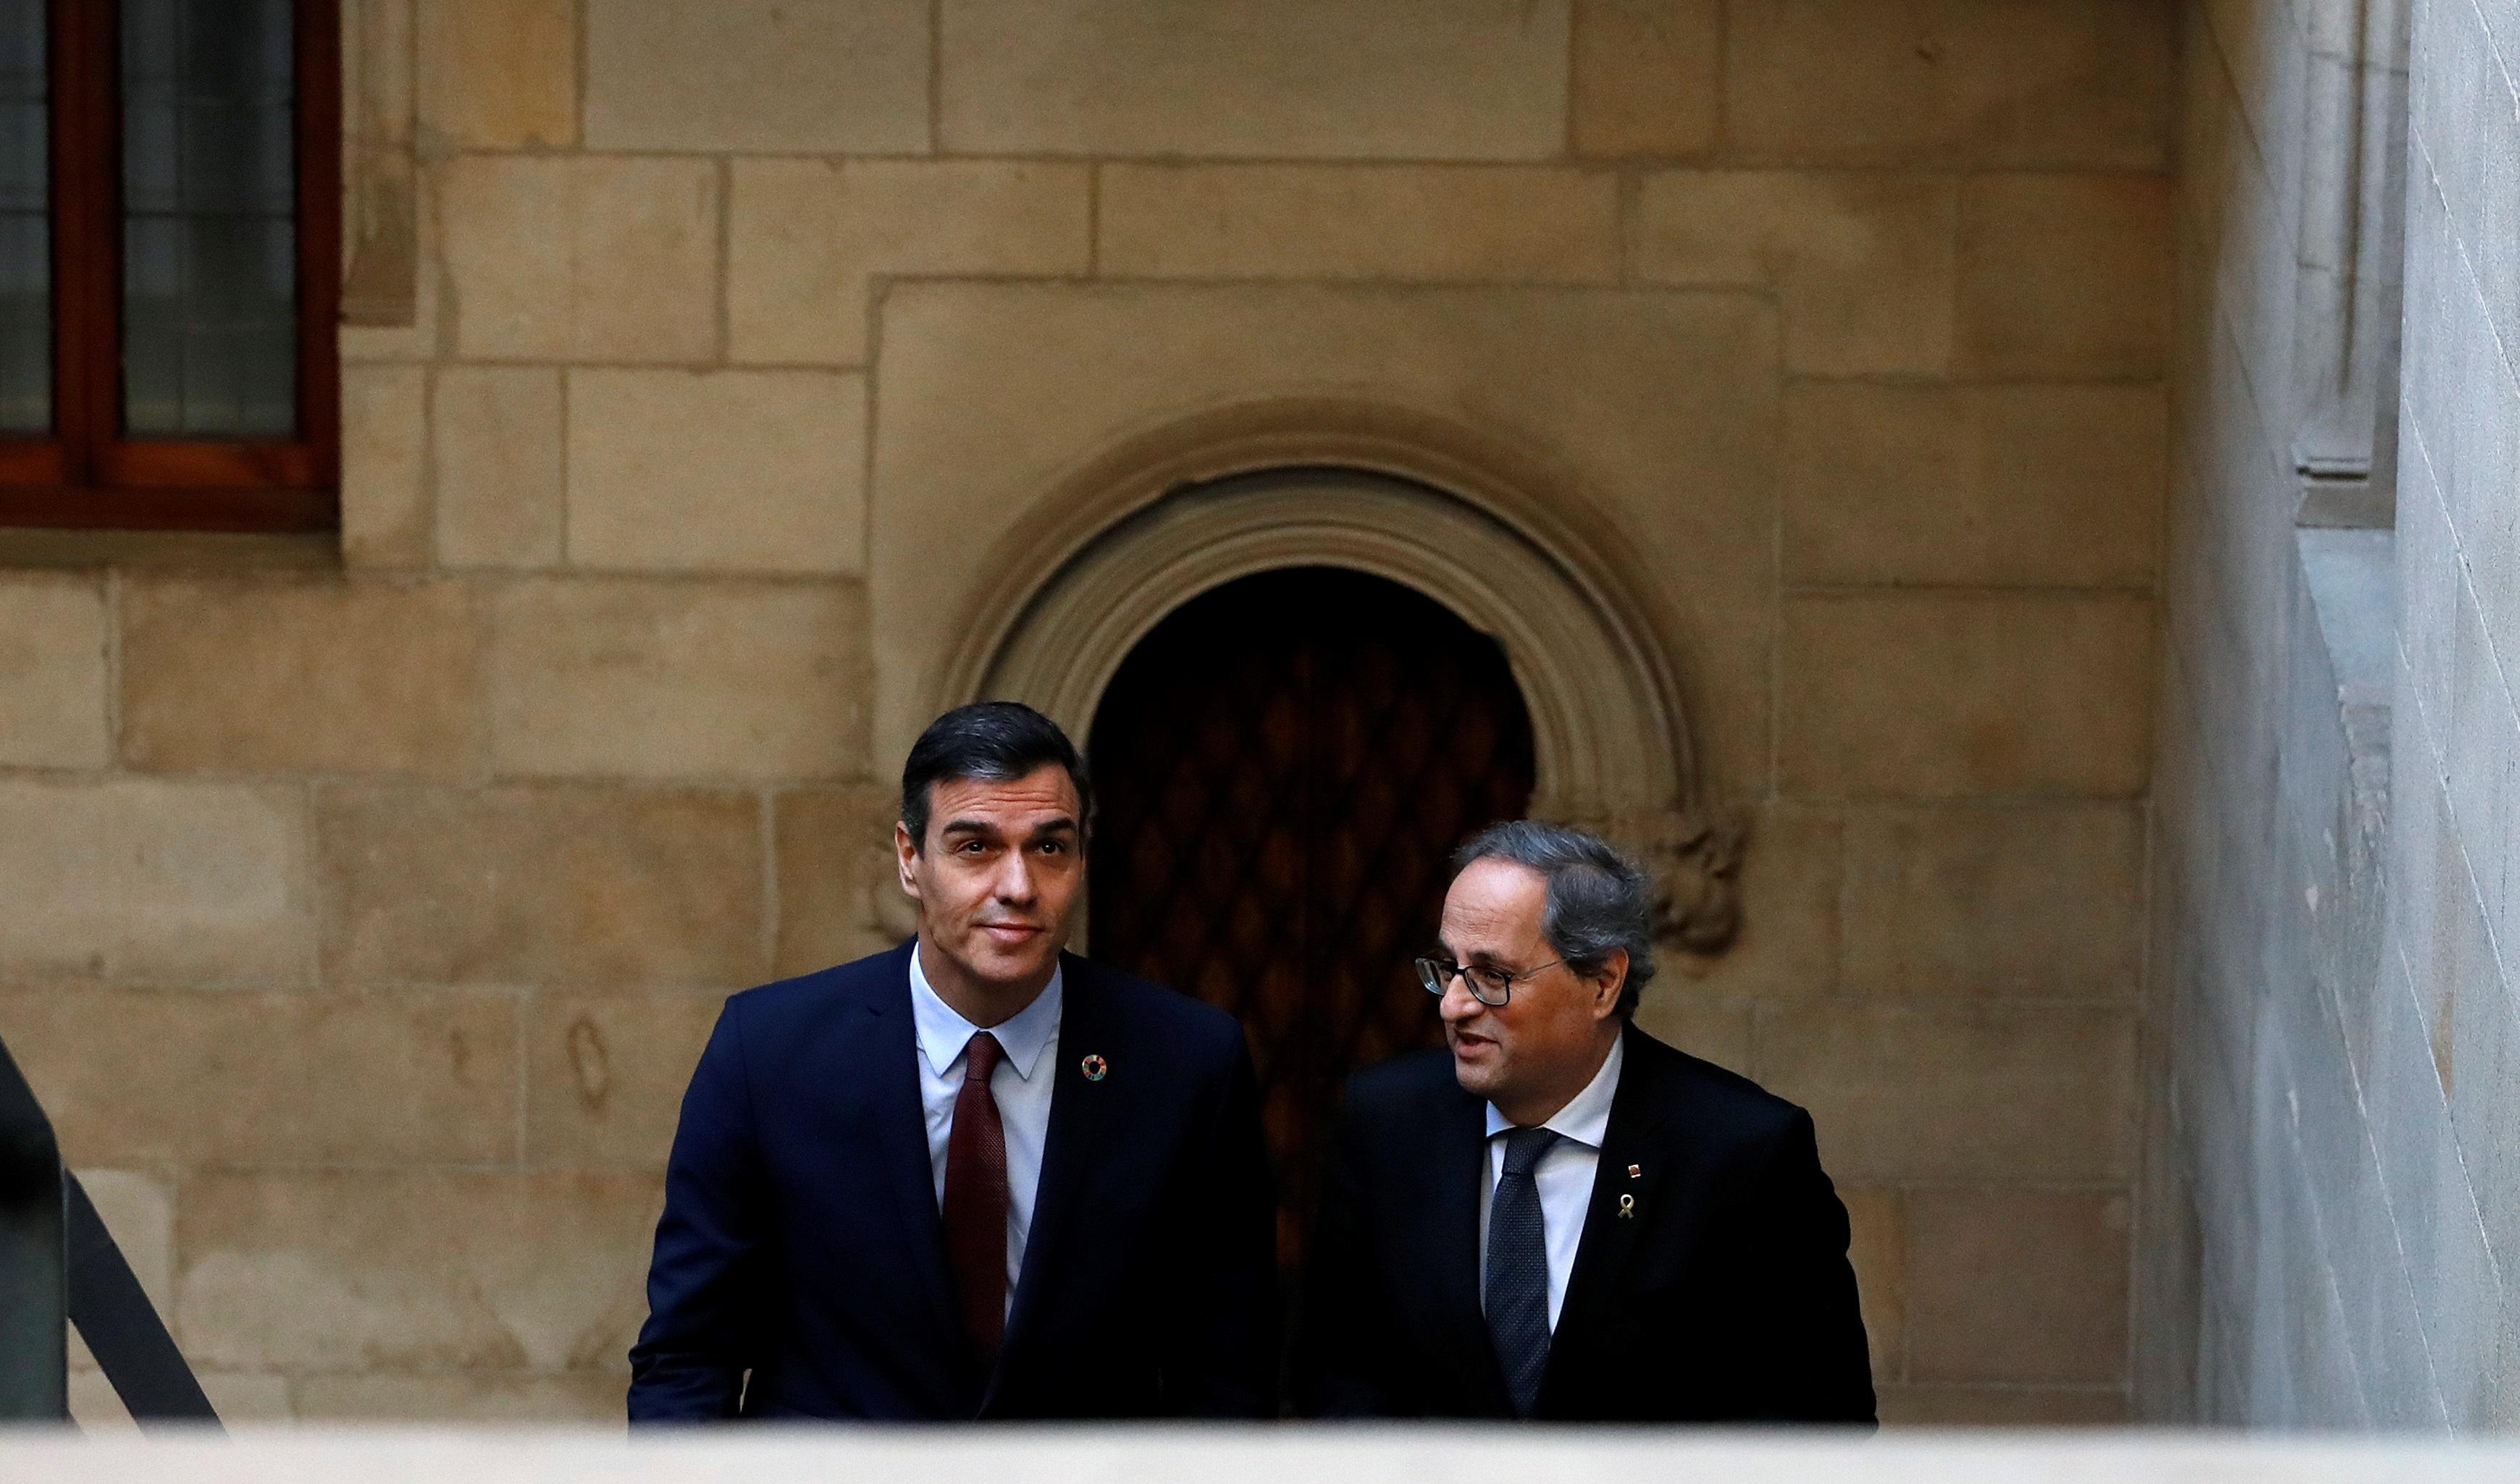 El presidente de la Generalitat Quim Torra (dech) y el presidente del Gobierno Pedro Sánchez (izq) a su llegada al Palau de la Generalita